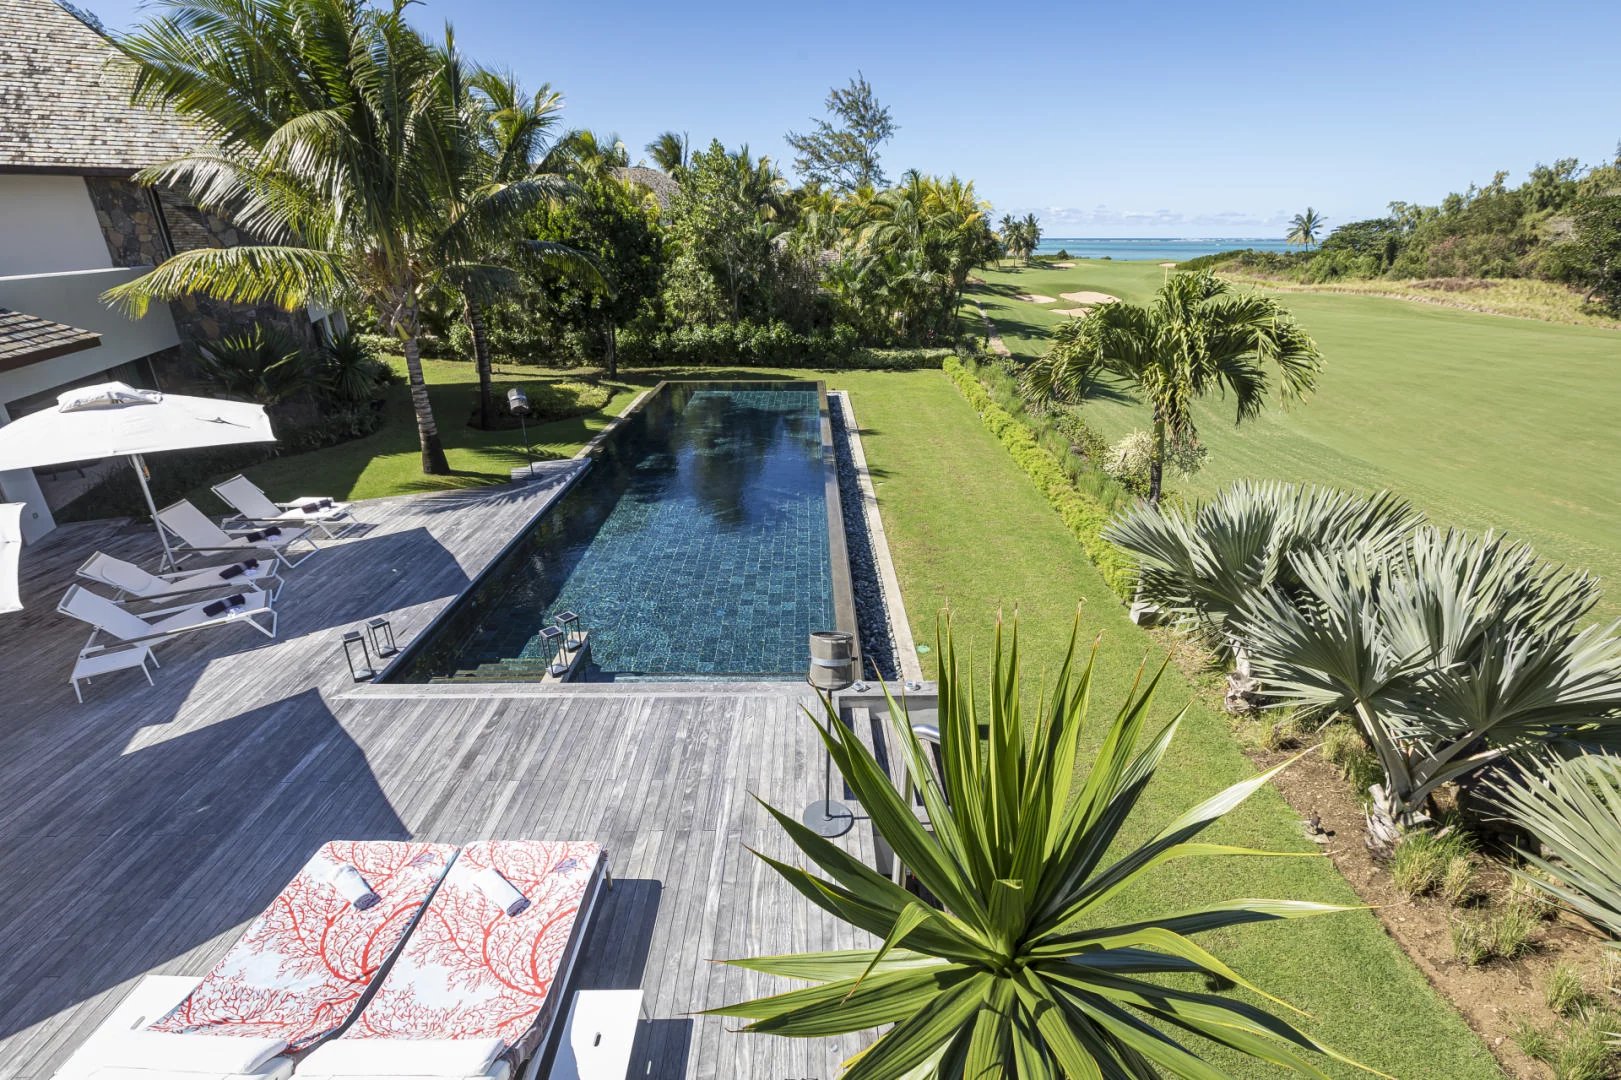 BEAU CHAMP - Villa spacieuse avec vue sur le lagon - 5 chambres